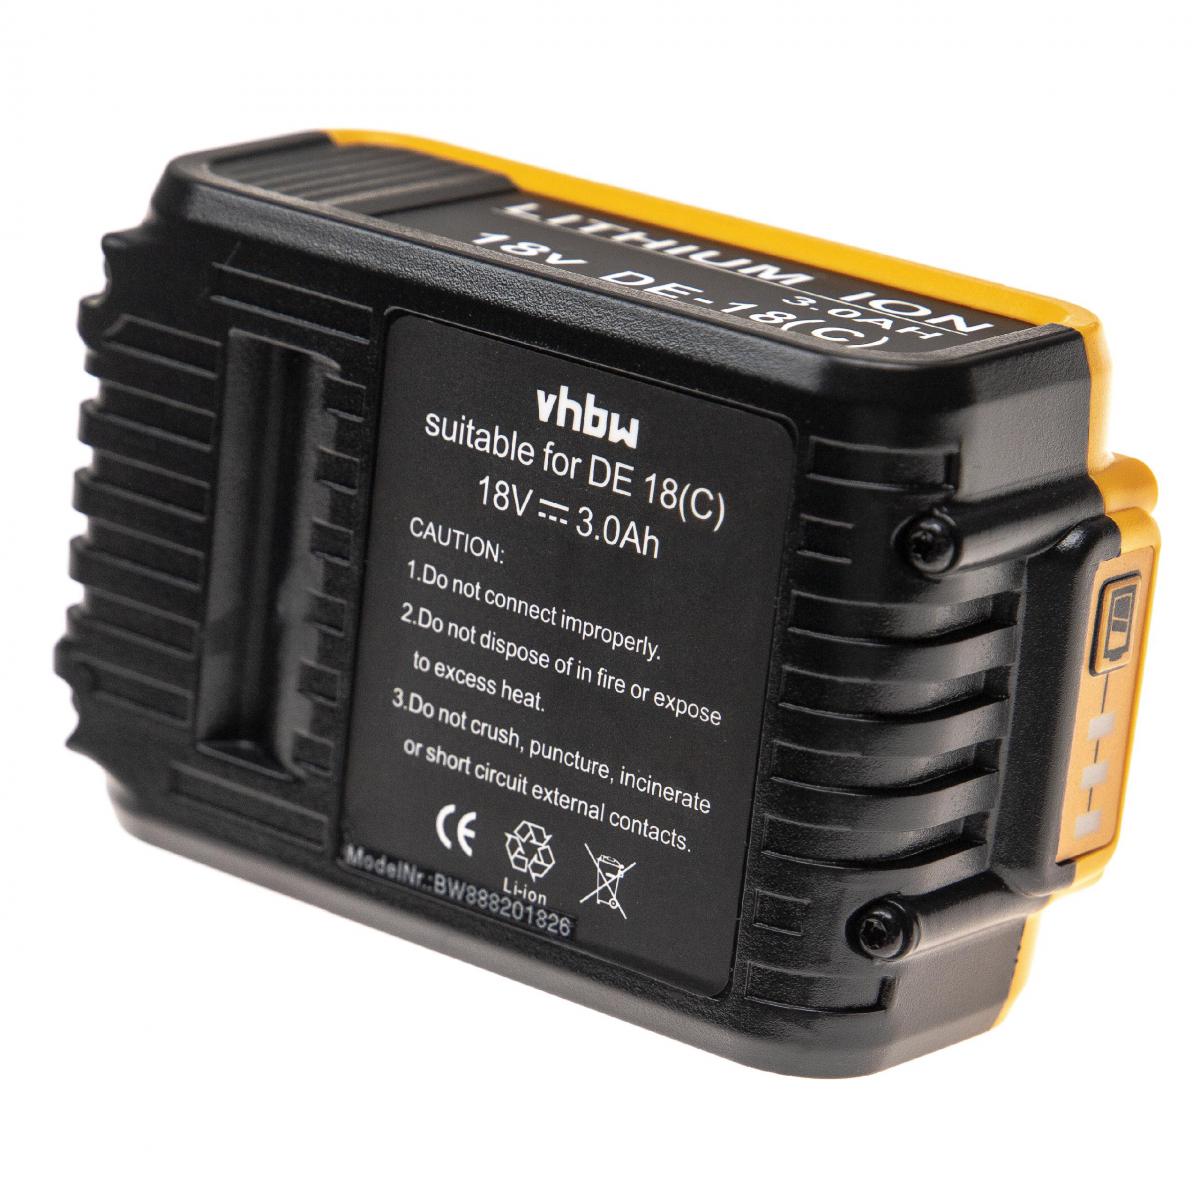 Vhbw - vhbw Batterie compatible avec Dewalt DCD780L2, DCD785, DCD785C2, DCD785L2, DCD790, DCD790D2, DCD795 outil électrique (3000mAh Li-Ion 18V) - Clouterie